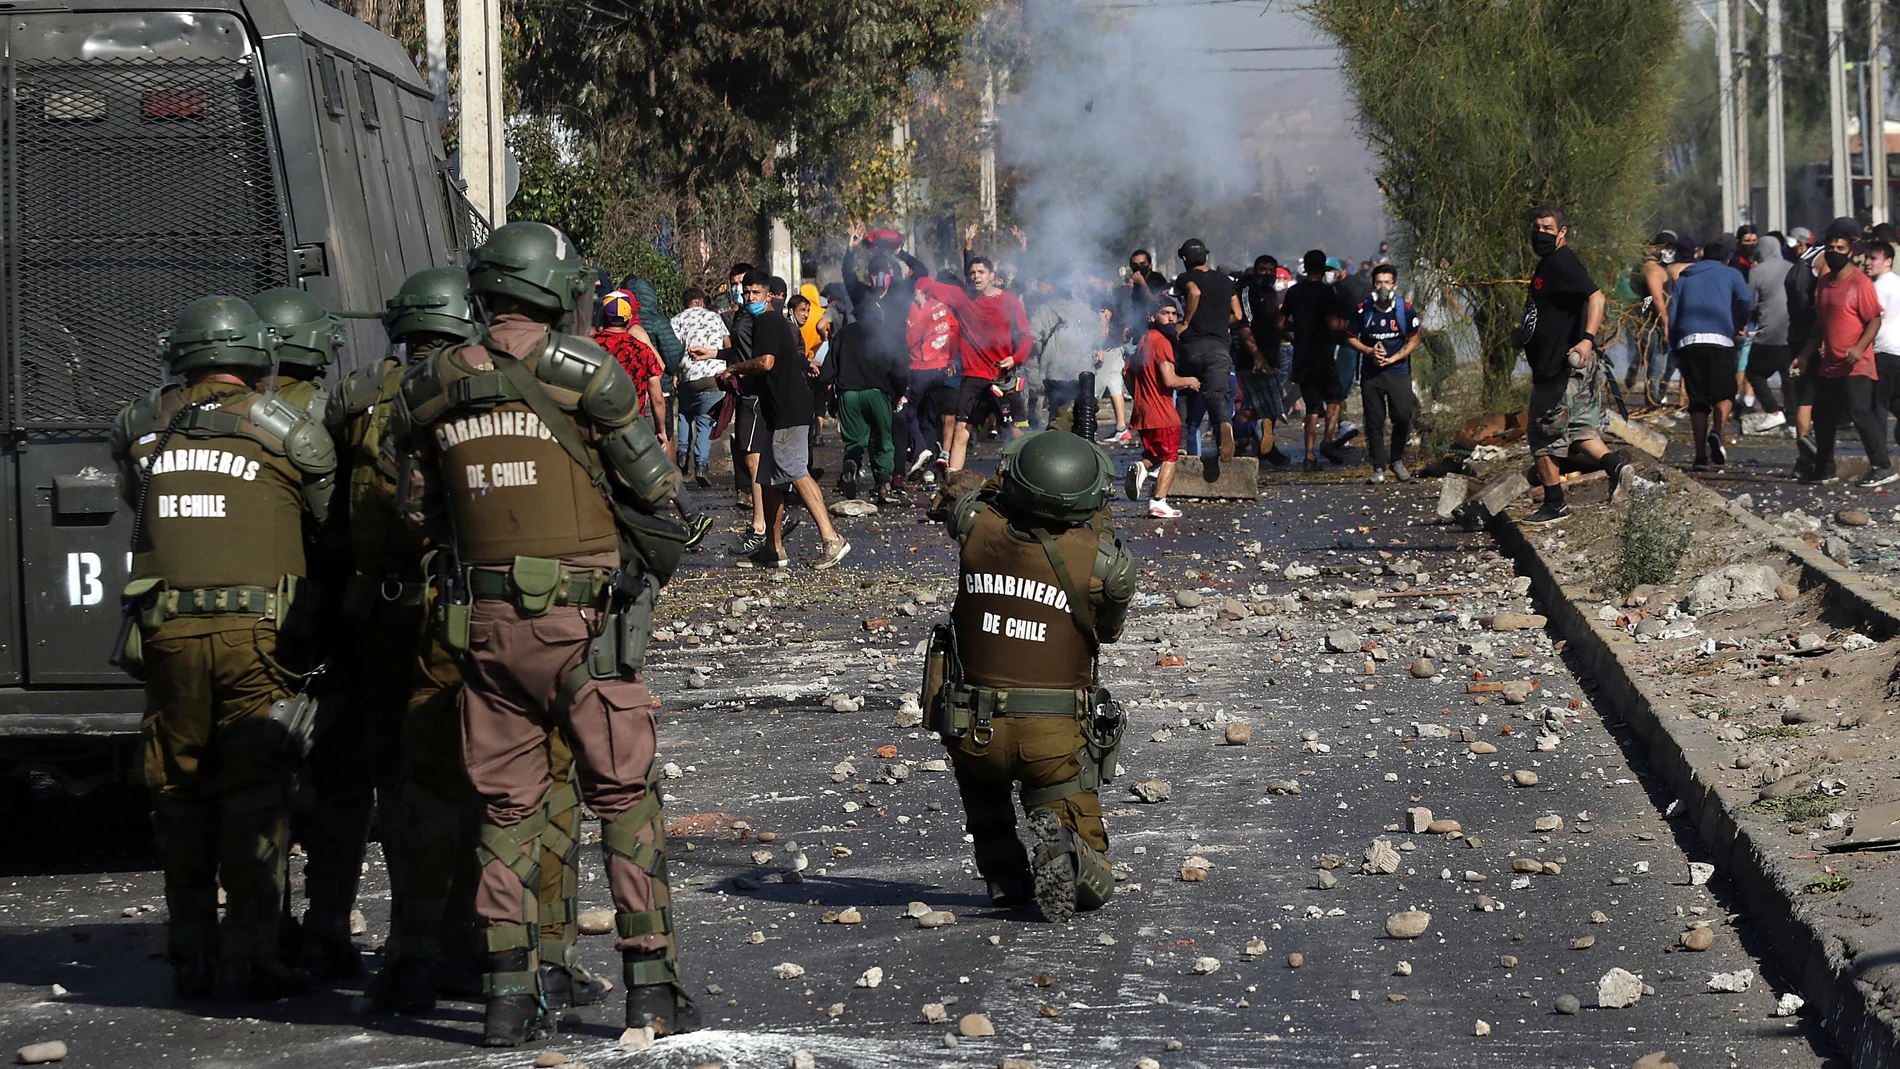 Clashes in Santiago